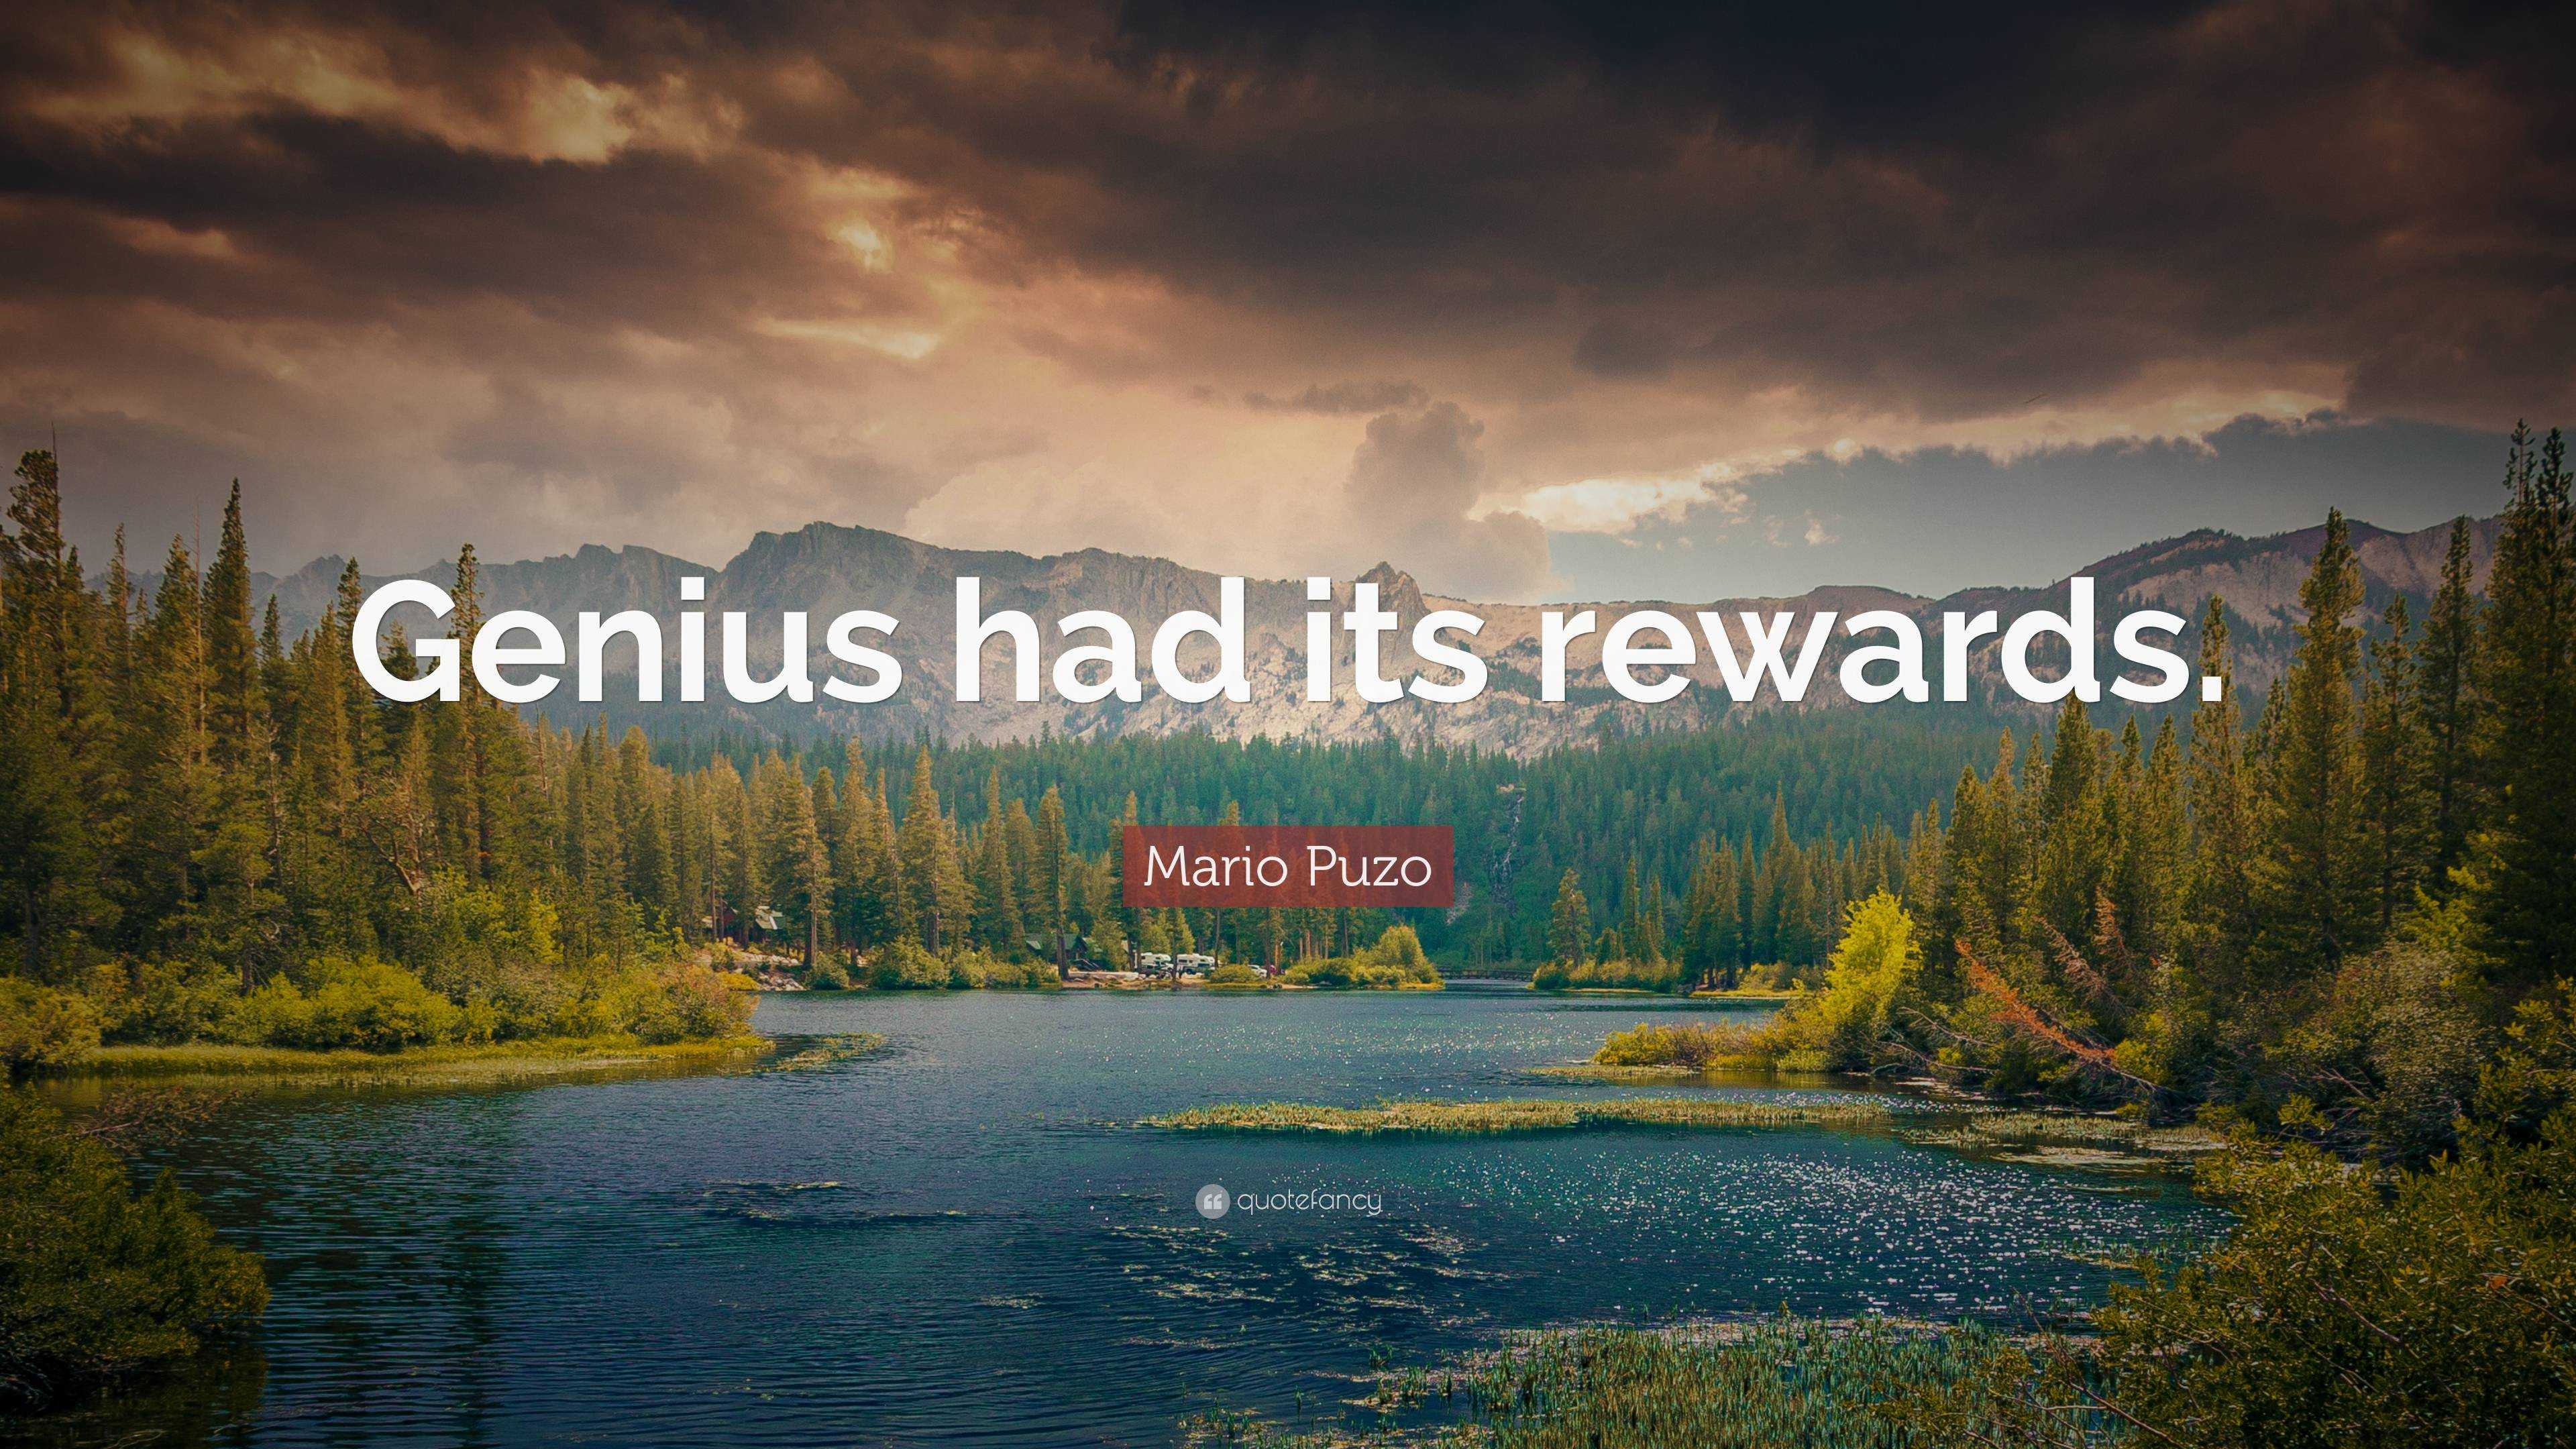 Mario Puzo Quote: “Genius had its rewards.”